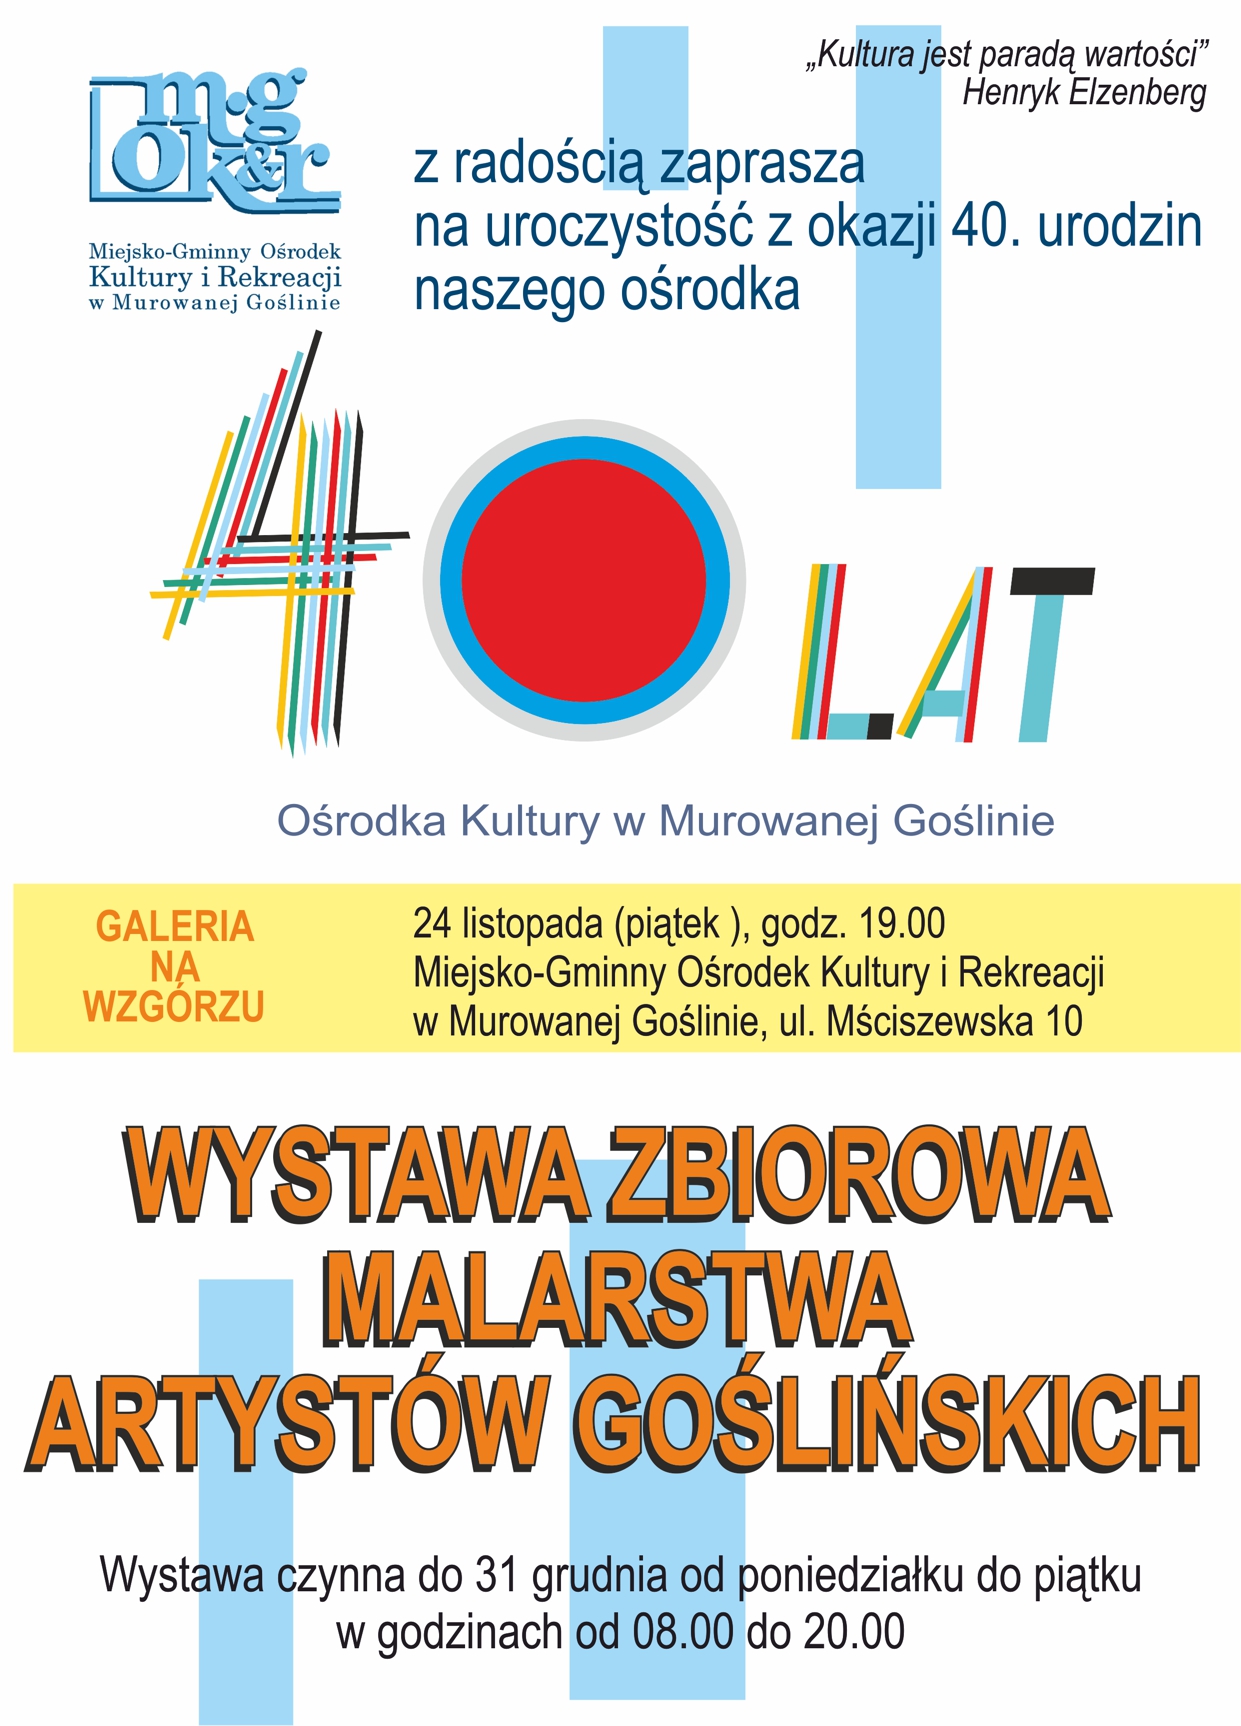 Wystawa zbiorowa malarstwa artystów goślińskich z okazji 40-lecia Ośrodka Kultury